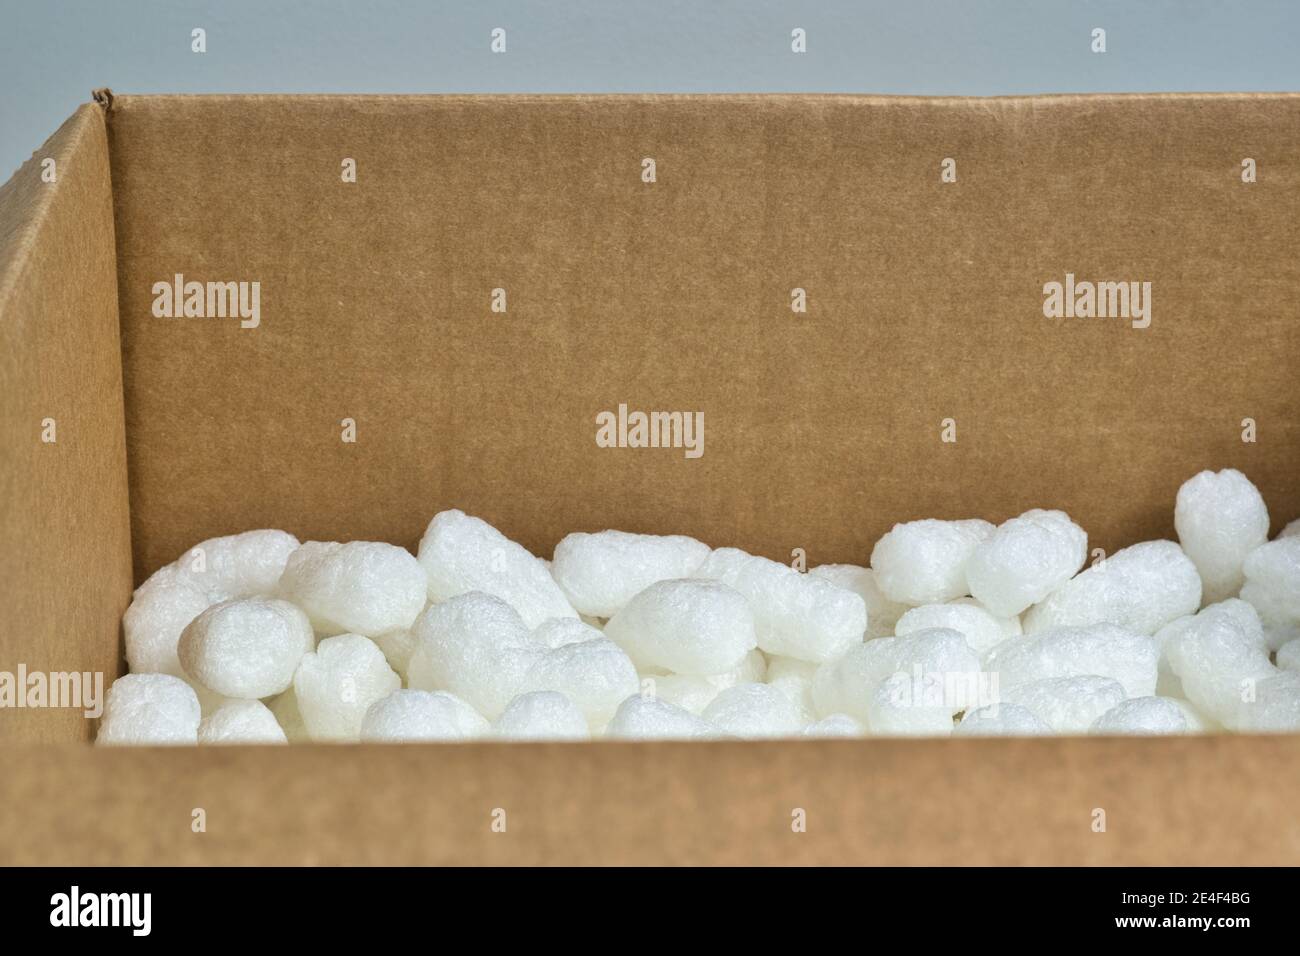 Emballage blanc arachides styromousse matériel d'emballage pop-corn à l'intérieur d'une boîte en carton, vue en angle avec espace de copie. Banque D'Images